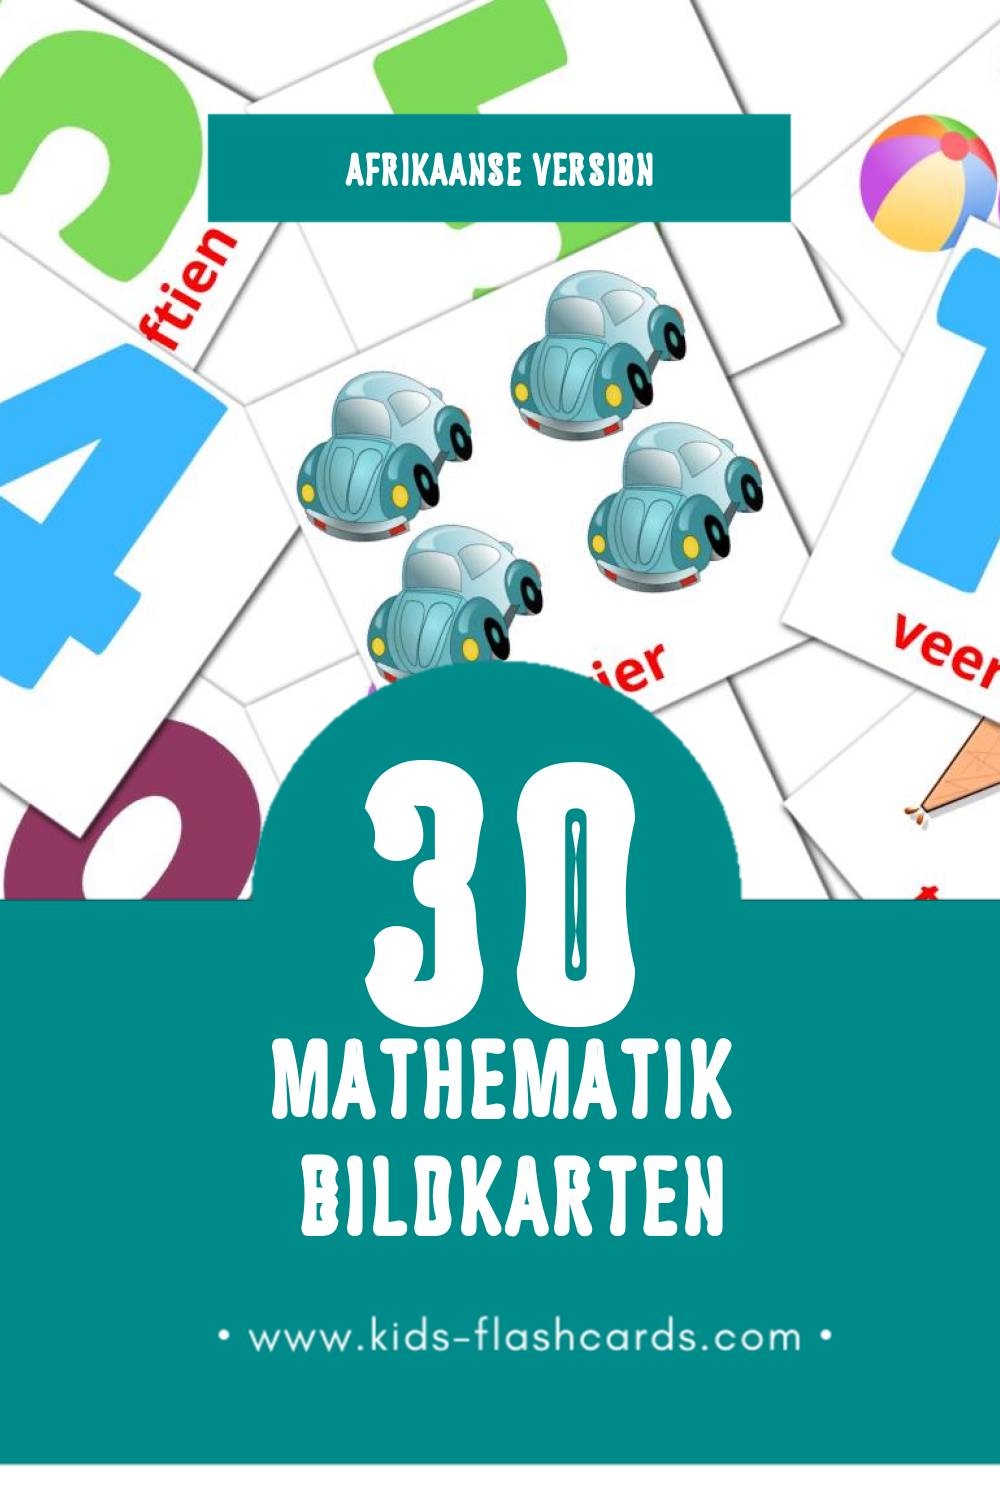 Visual Wiskunde Flashcards für Kleinkinder (30 Karten in Afrikaans)